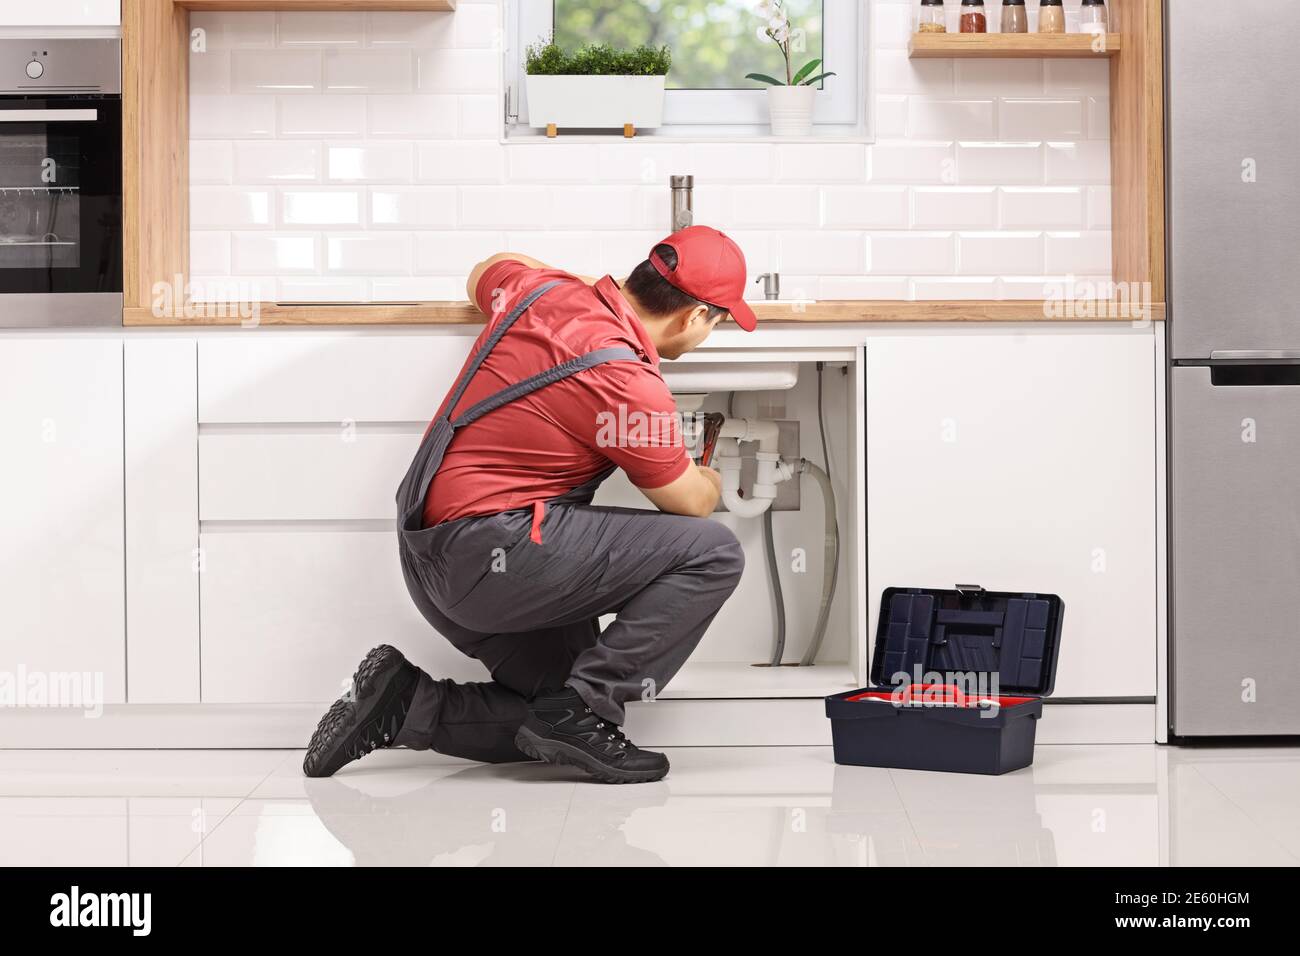 Plomber agenouiller et fixer un tuyau sous l'évier dans un cuisine moderne Banque D'Images